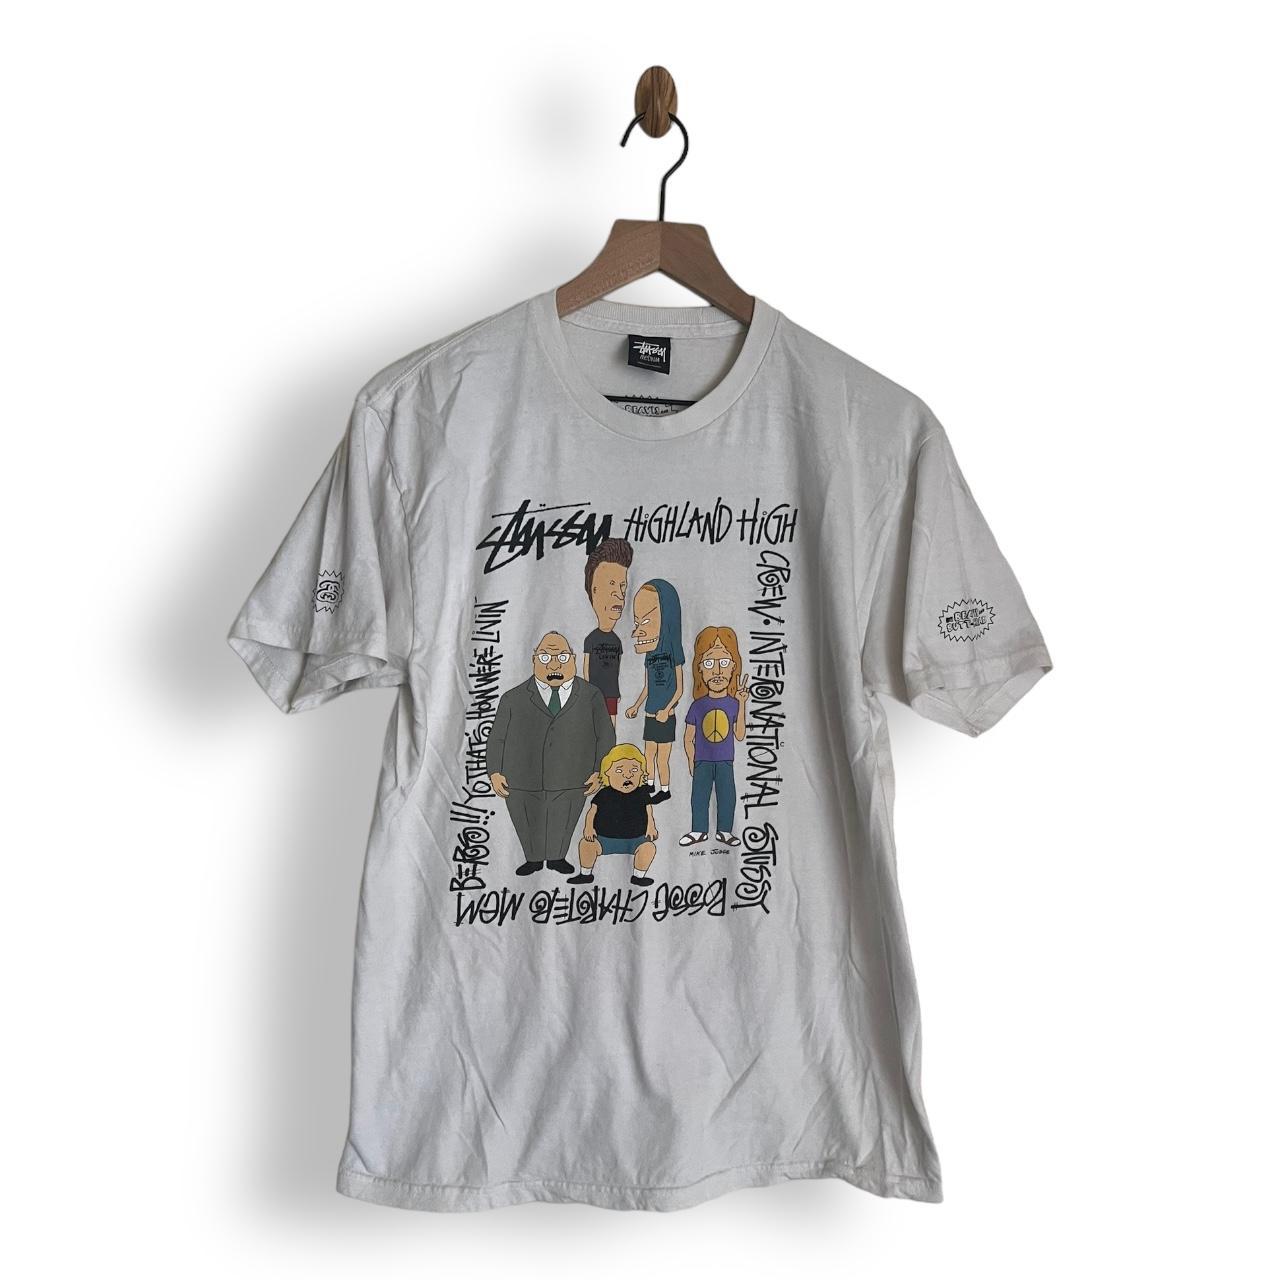 2000s Stussy x Beavis & Butthead T-shirt size Medium... - Depop